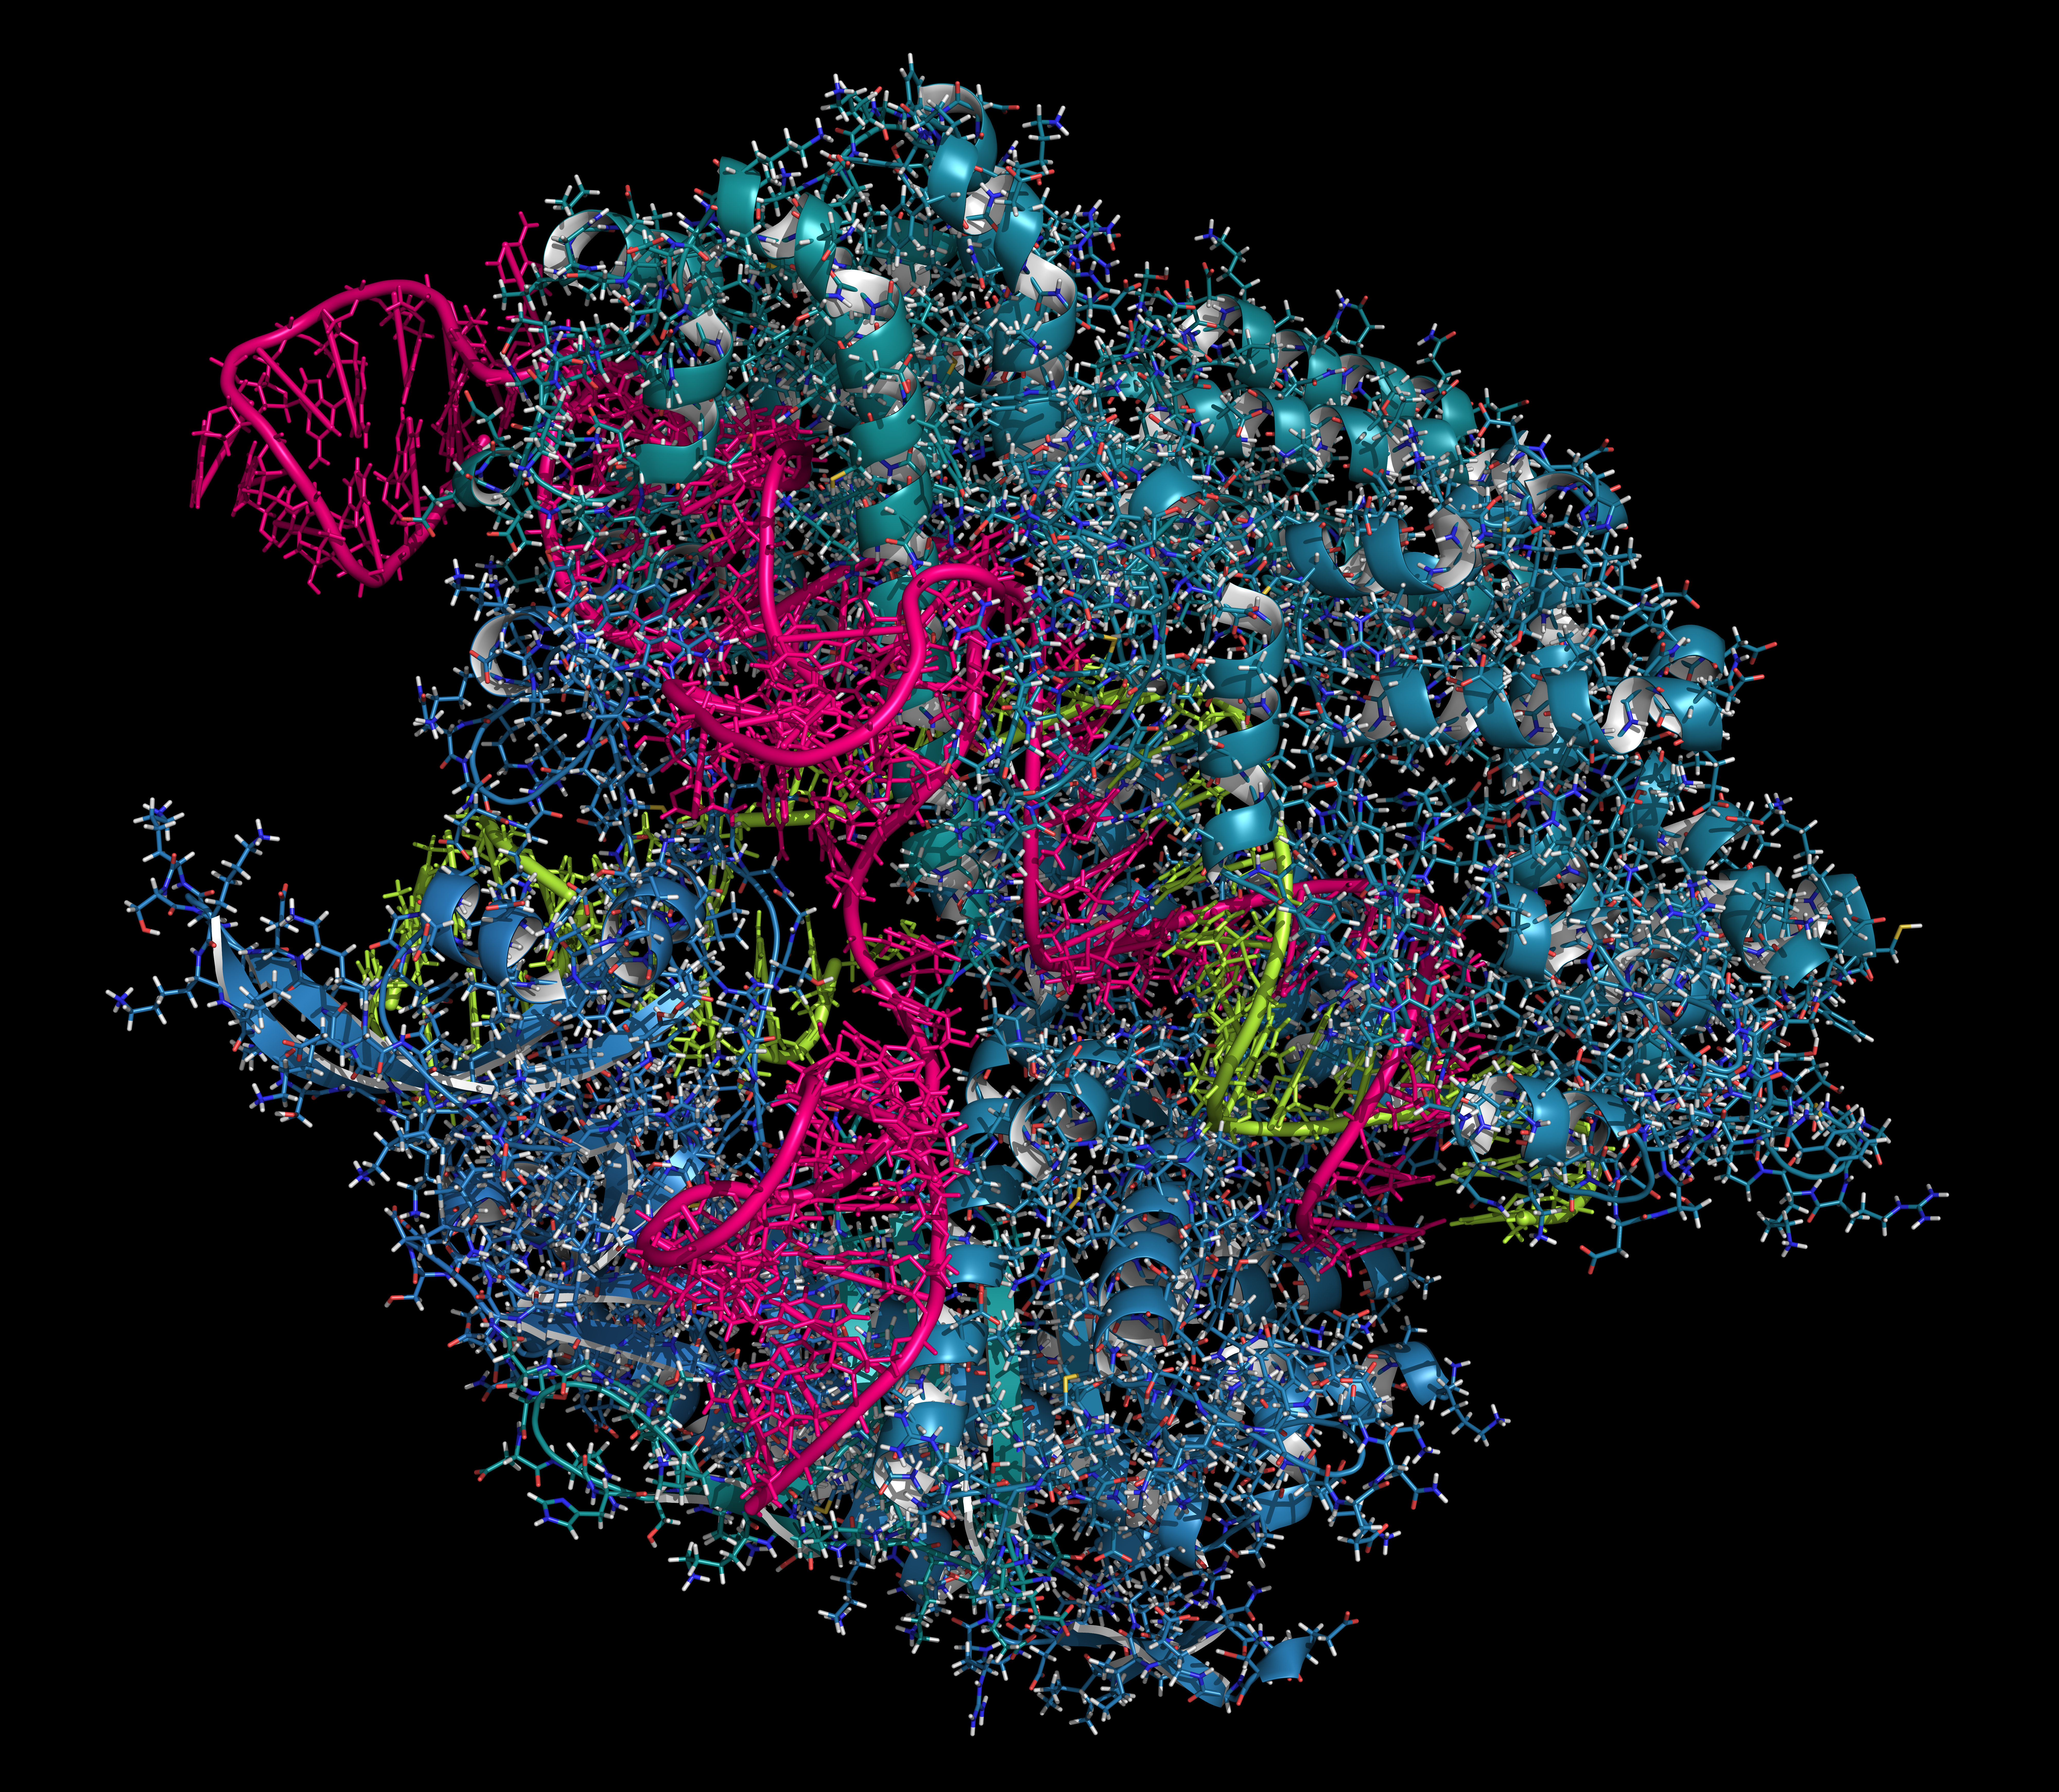 CRISPR-CAS9 gene editing complex from Streptococcus pyogenes.